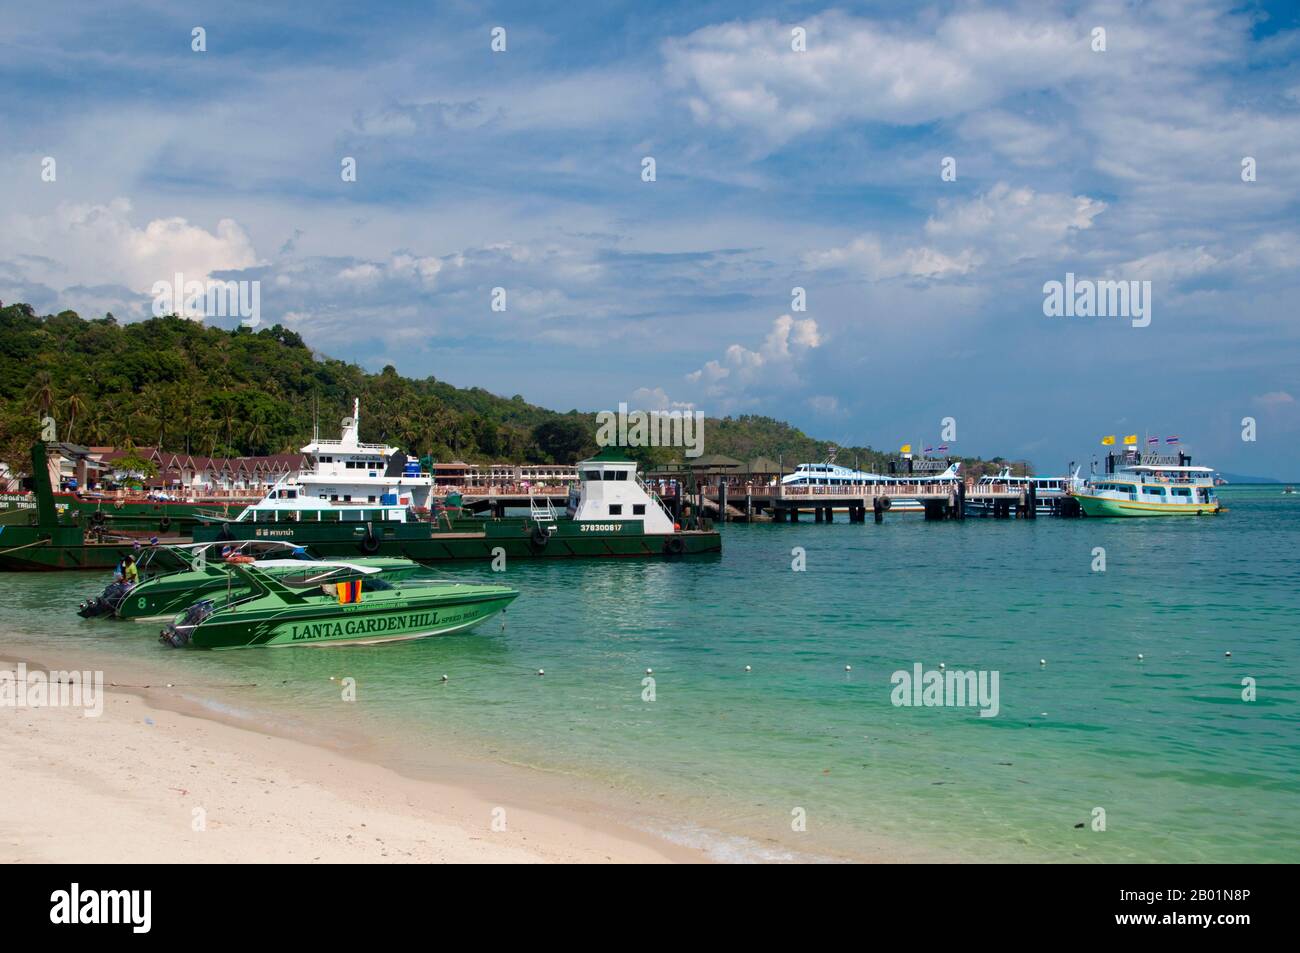 Thaïlande : hors-bord et embarcadère, baie de Tonsai, village de Tonsai (Ban ton Sai), Ko Phi Phi Don, Ko Phi Phi. Ko Phi Phi se compose de deux îles, Phi Phi Leh et Phi Phi Don, situées au sud-est de Phuket. Tous deux font partie du parc marin national Hat Noppharat Thara Ko Phi Phi. Situé dans le centre de la mer de Phuket, Ko Phi Phi est presque à égale distance de Phuket et de Krabi et peut être atteint en bateau en environ deux heures. Phi Phi Don est la plus grande des deux îles, avec des collines pittoresques, des falaises abruptes, des plages de soie, des eaux azur et une vie remarquable d'oiseaux et de mer. Banque D'Images